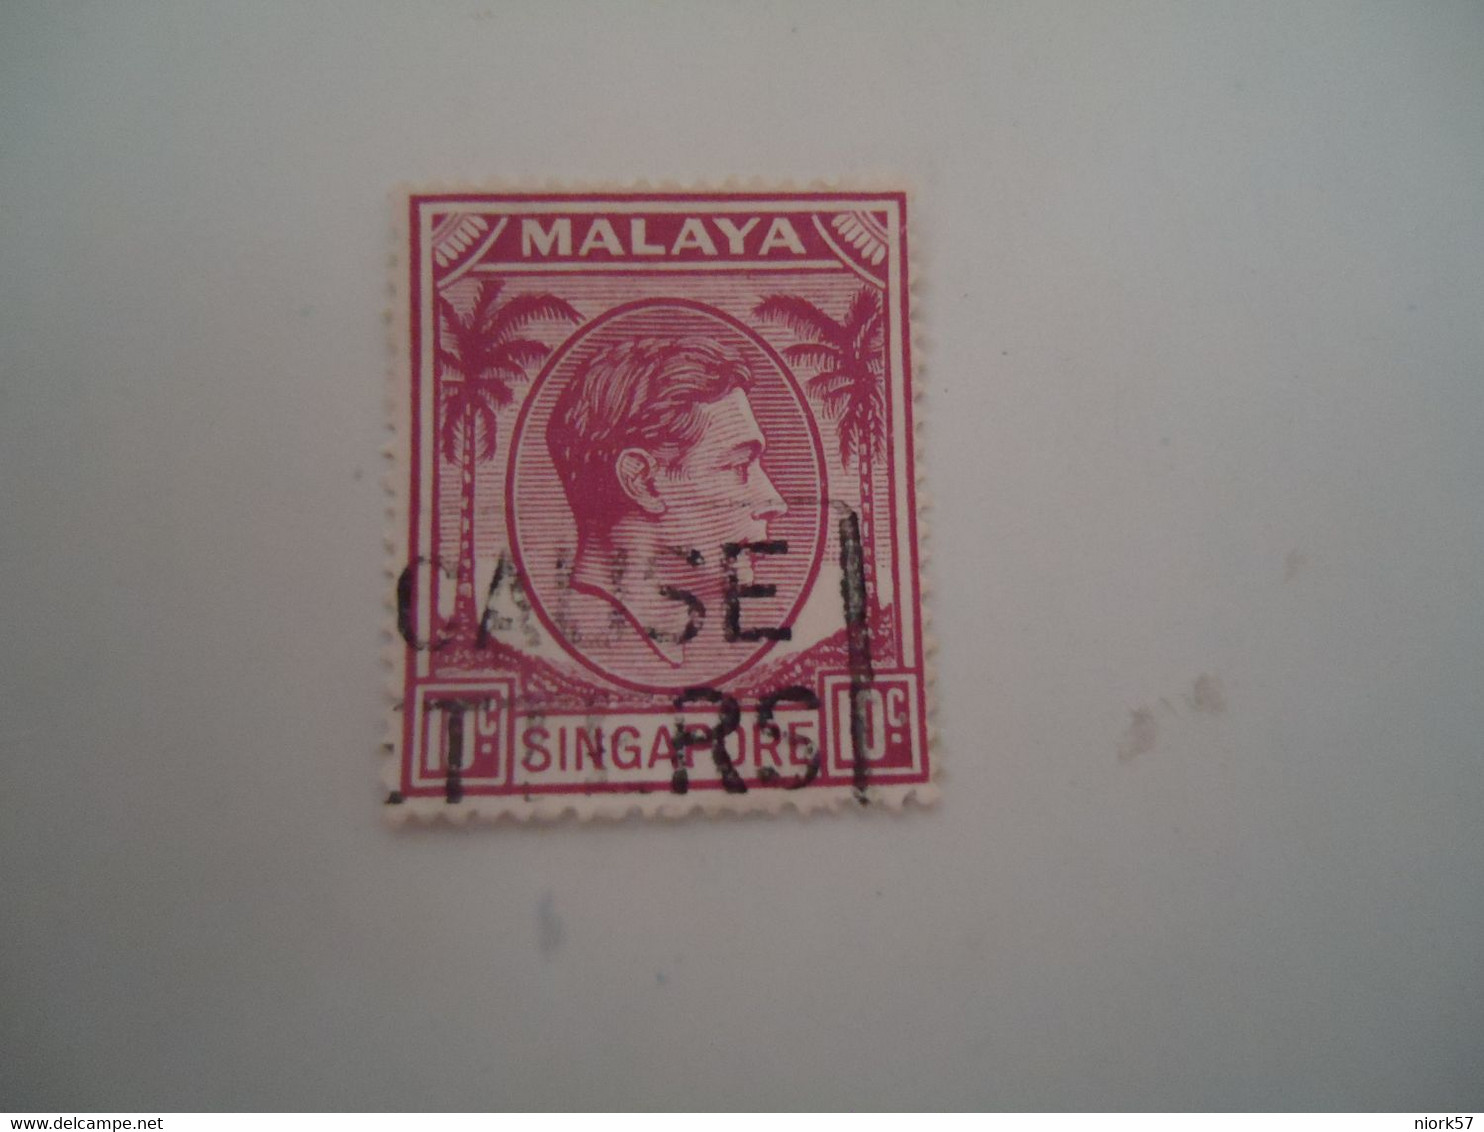 MALAYA  USED STAMPS  KING - Malayan Postal Union